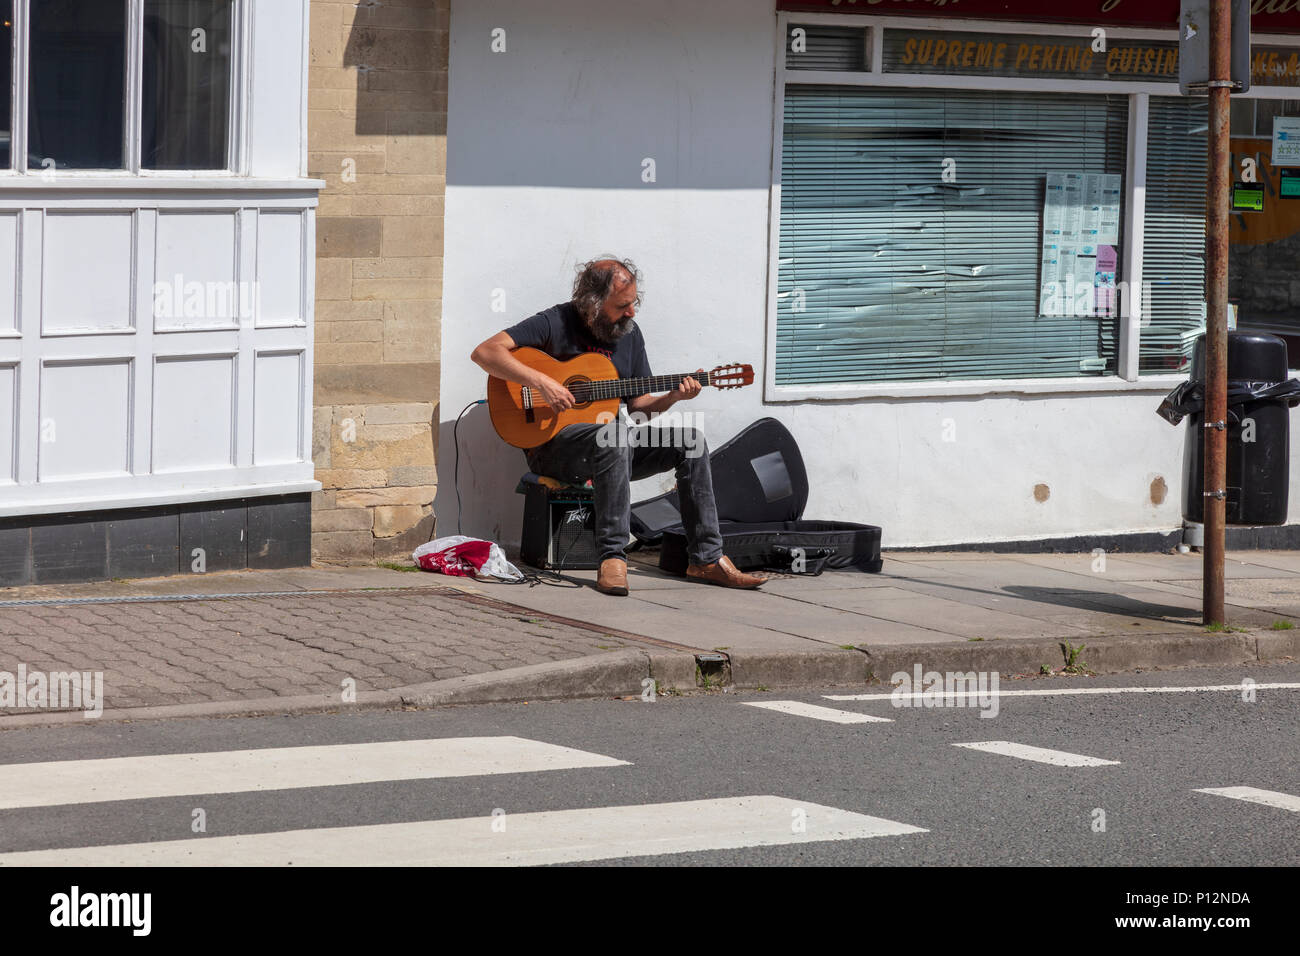 Un guitariste joue sur busker Malmesbury High Street, au début de l'été soleil, à côté d'un la Barclays Bank et un passage clouté, Wiltshire, Royaume-Uni Banque D'Images